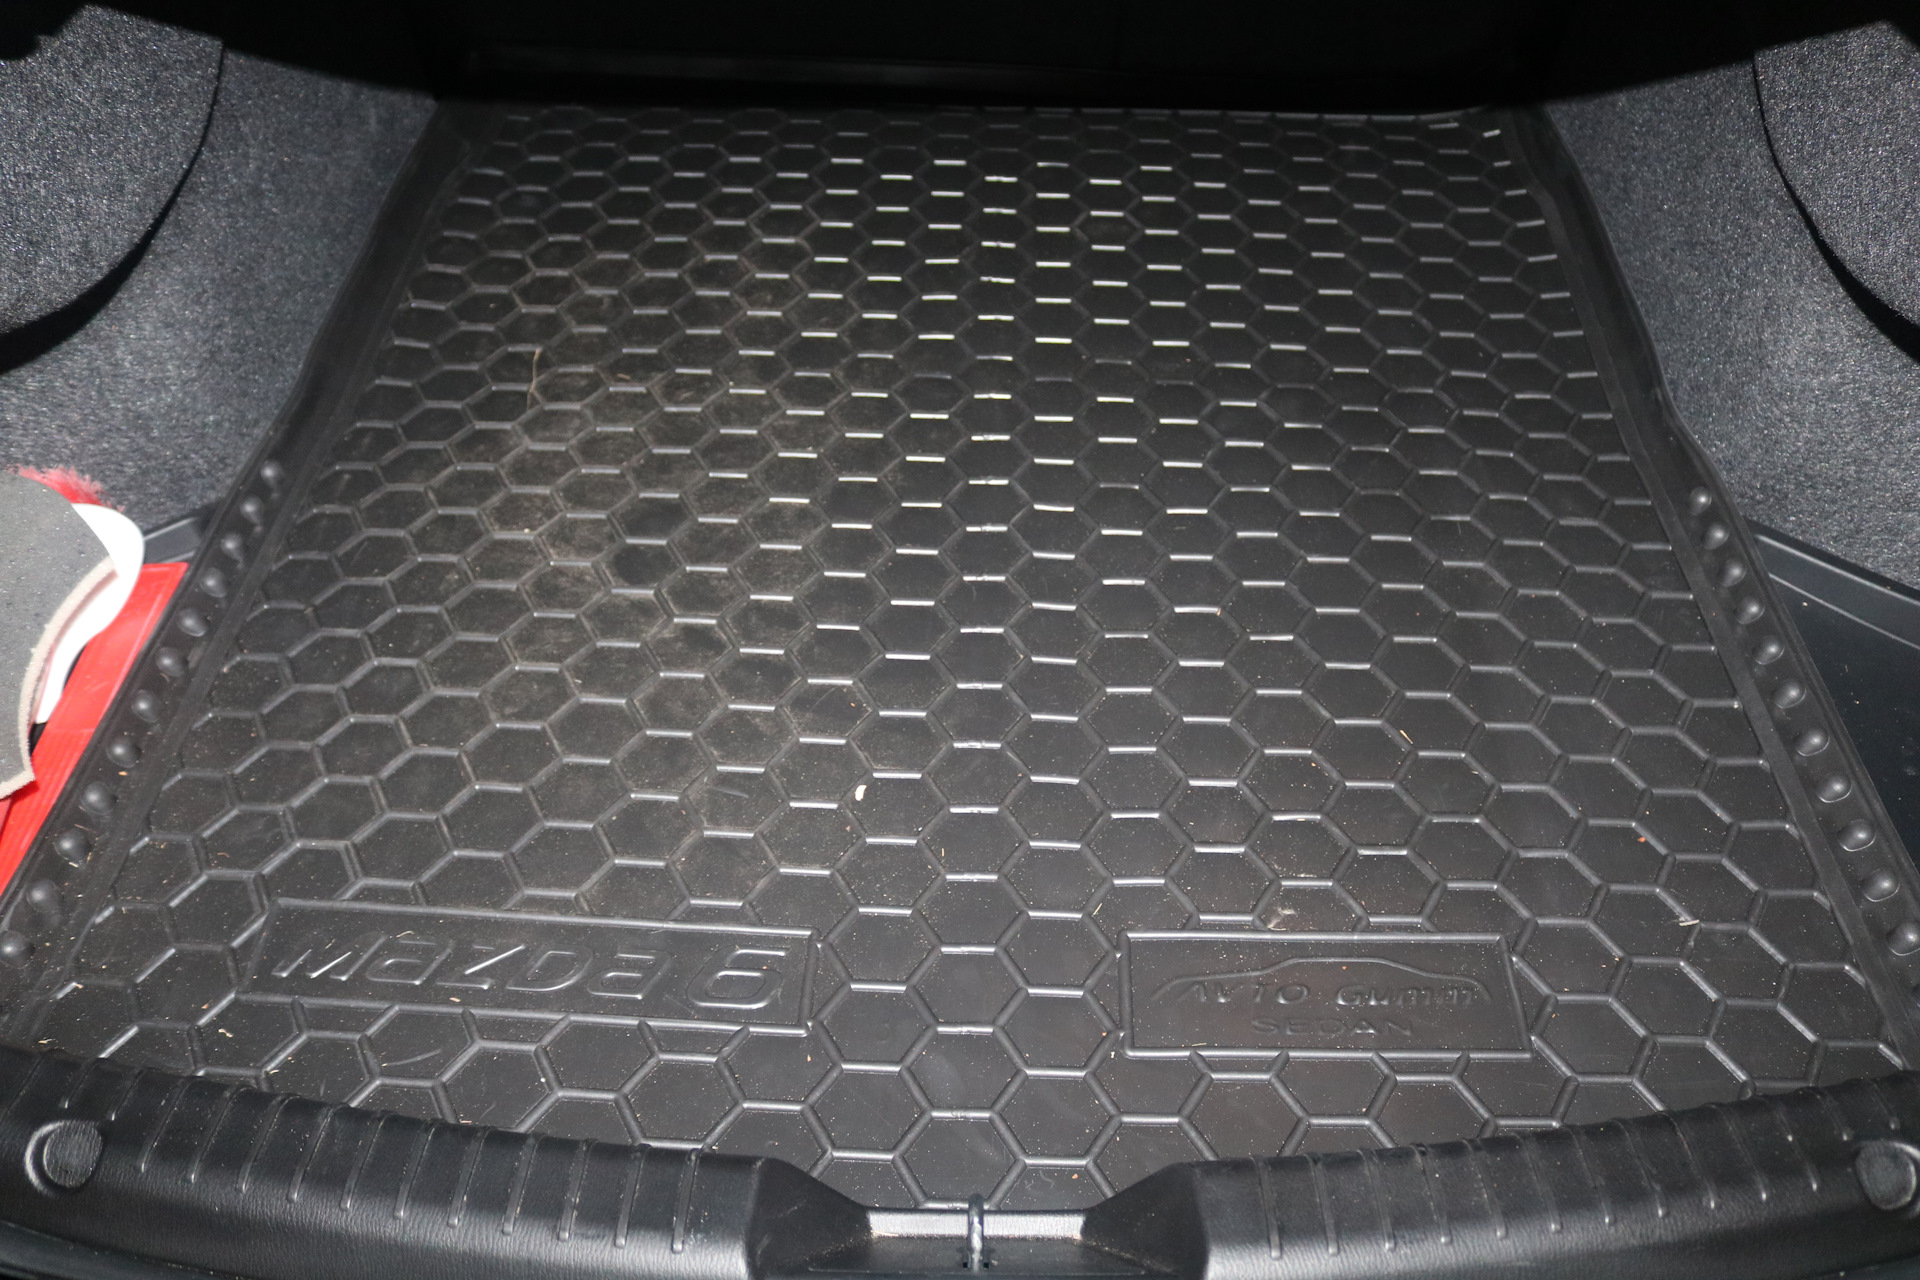 Купить коврики от производителя. Коврик багажника Мазда 6. Коврик в багажник Mazda 6 GH седан. Коврик в багажник Мазда 6 gg. ЭВА коврик в багажник Мазда 6 gg.